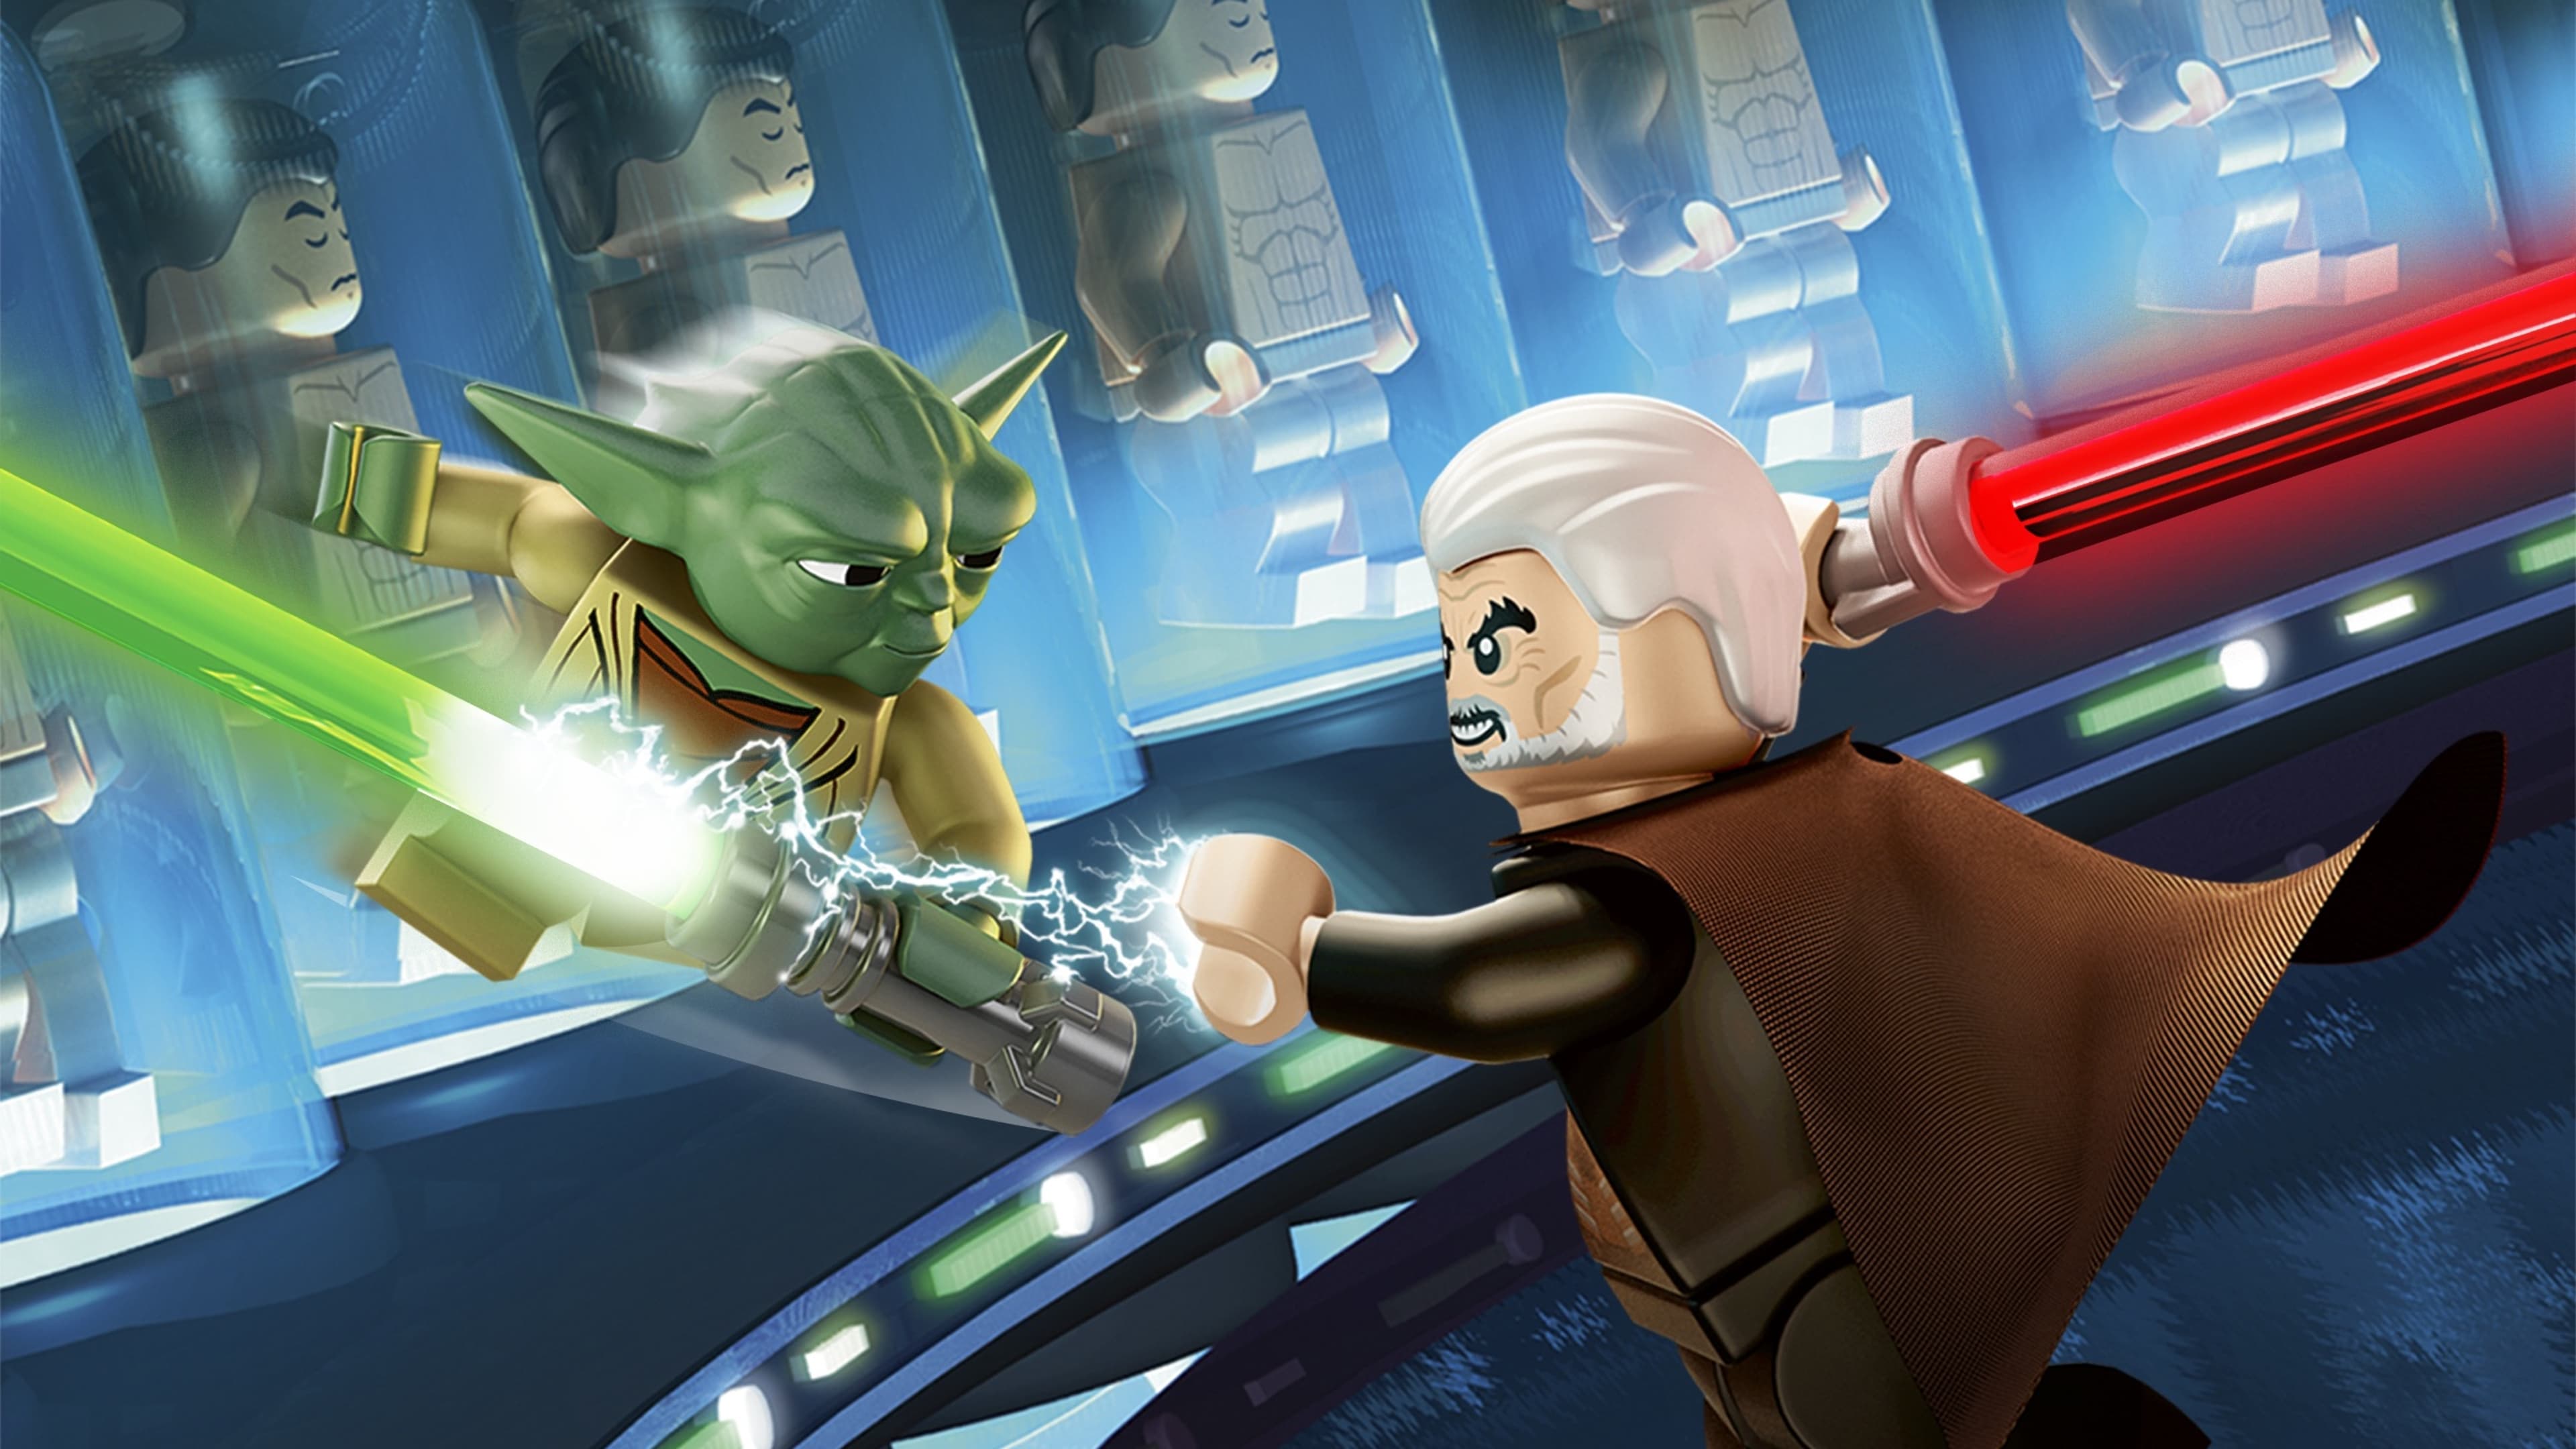 LEGO Star Wars: Le cronache di Yoda